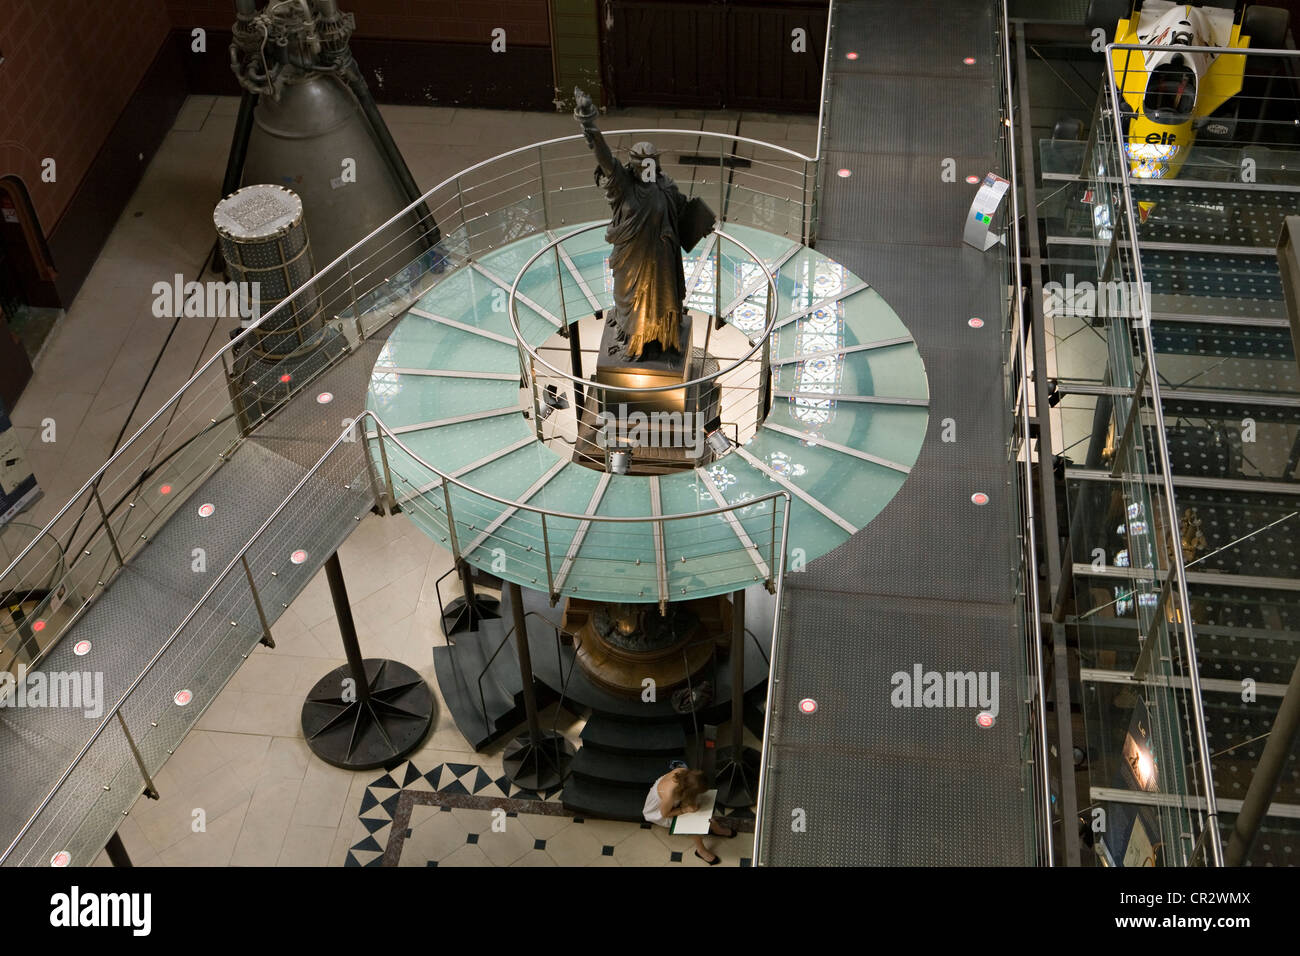 France, Paris, Musée des Arts et Métiers (CNAM), Statue de la liberté sur l'échelle de 1/16ème fabriqué par Bartholdi en 1875 Banque D'Images